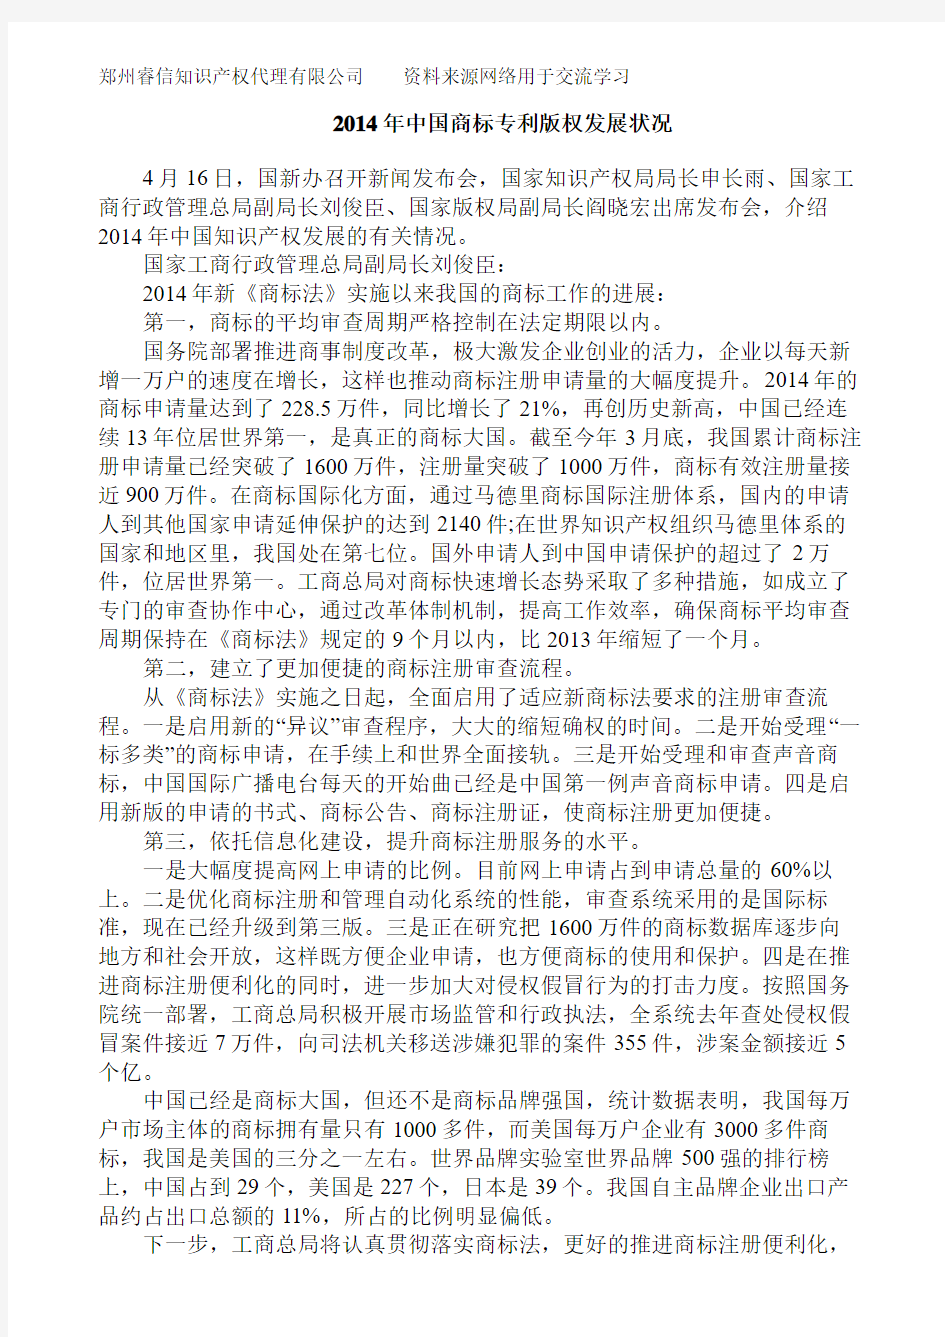 2014年中国商标专利版权发展状况